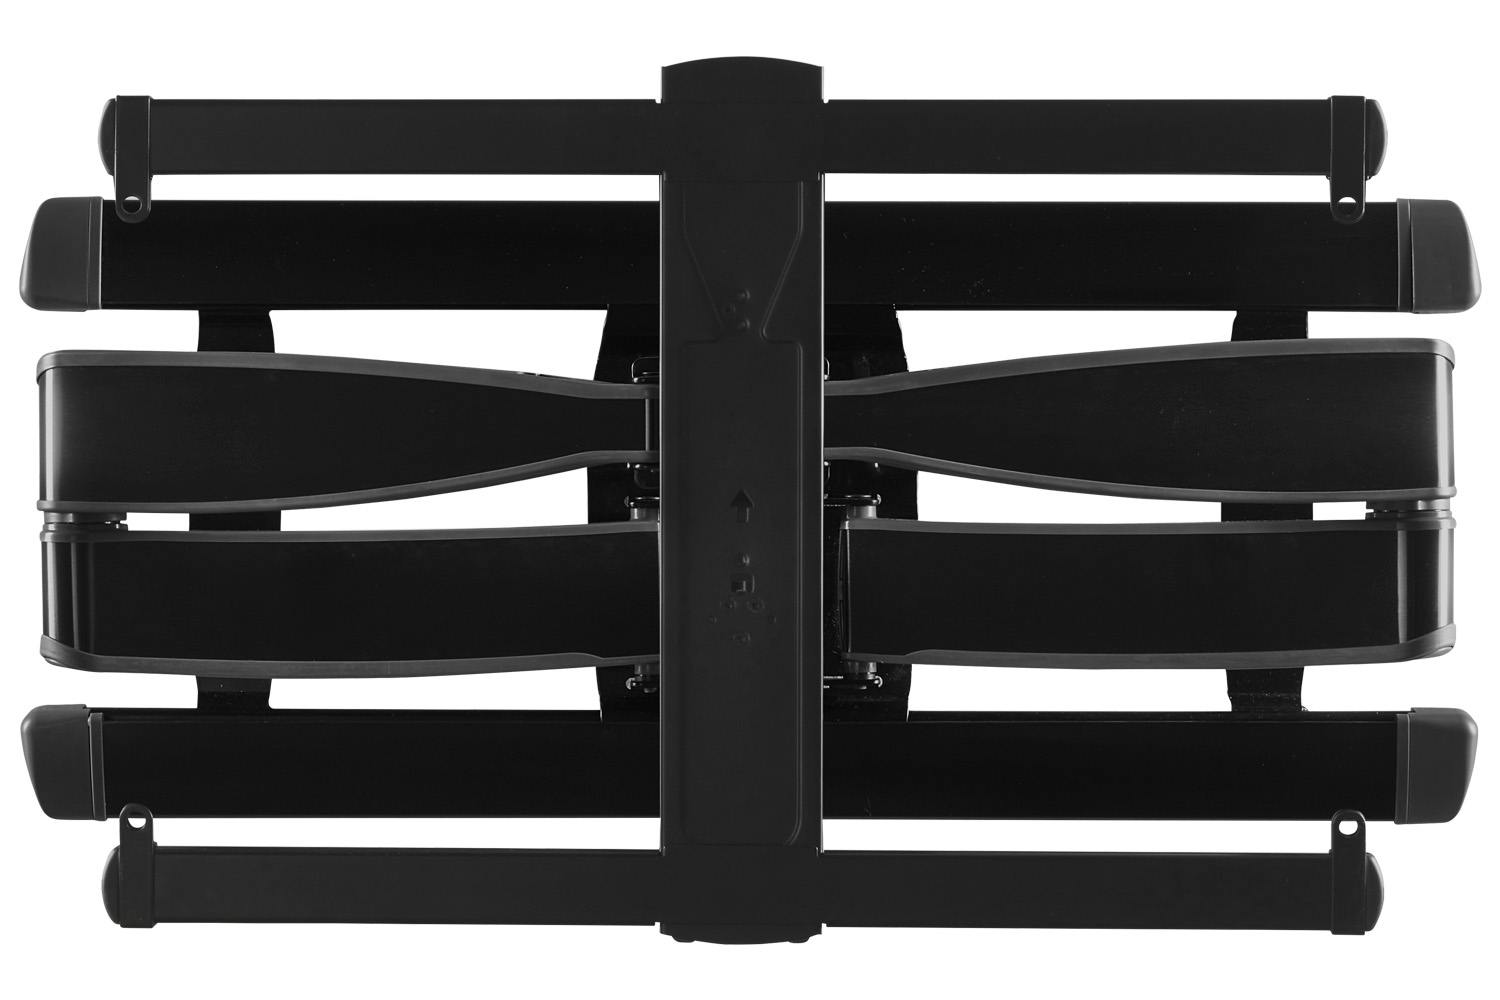 Sanus Full-Motion Wall Mount for 42" – 90" Flat Panel TVs | VLF728-B2